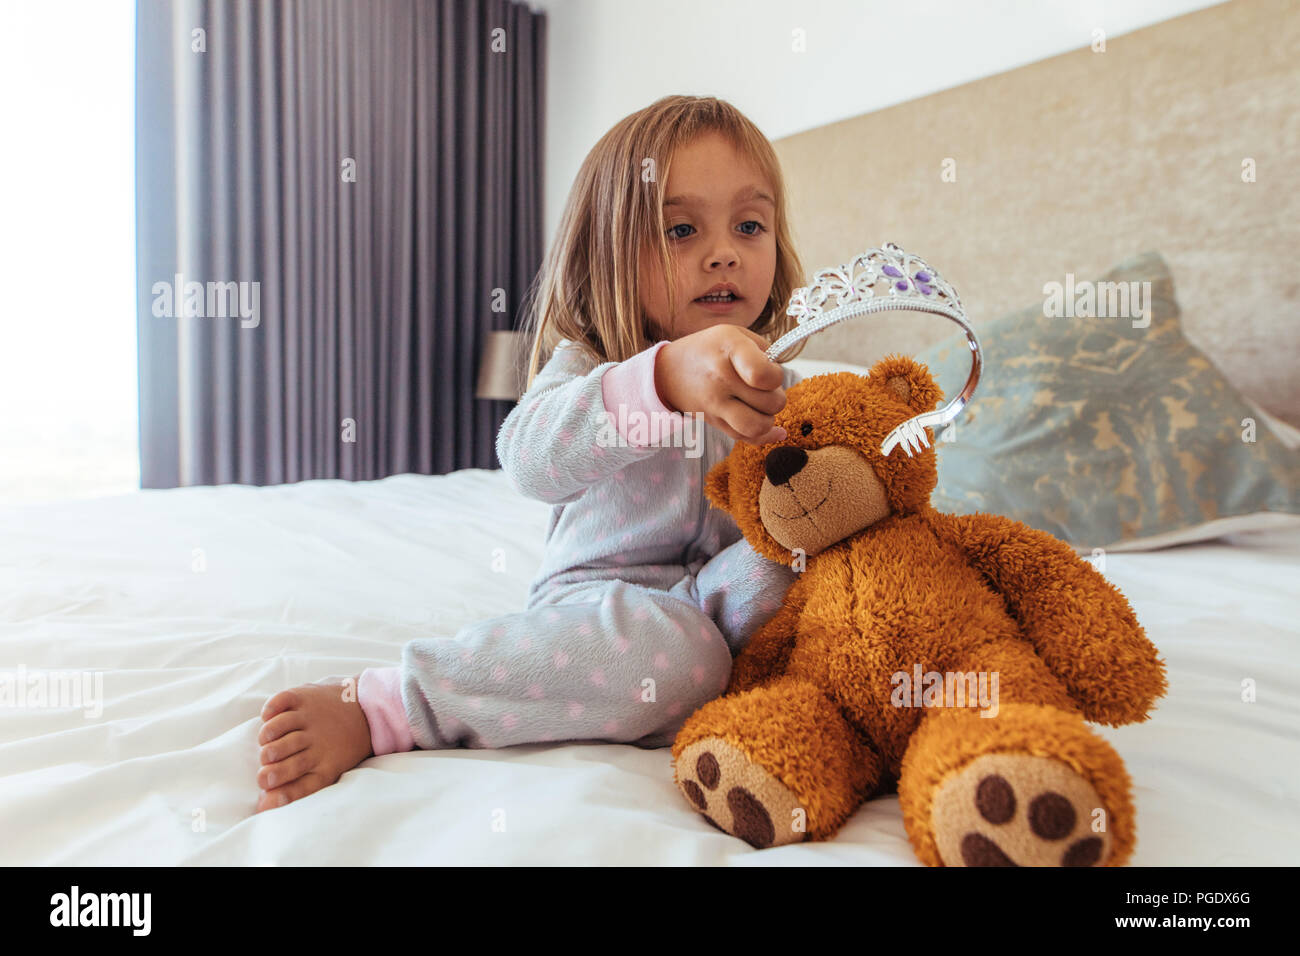 Jeune fille innocente en mettant une couronne sur son ours en peluche. Petite fille jouant avec son doudou. Banque D'Images